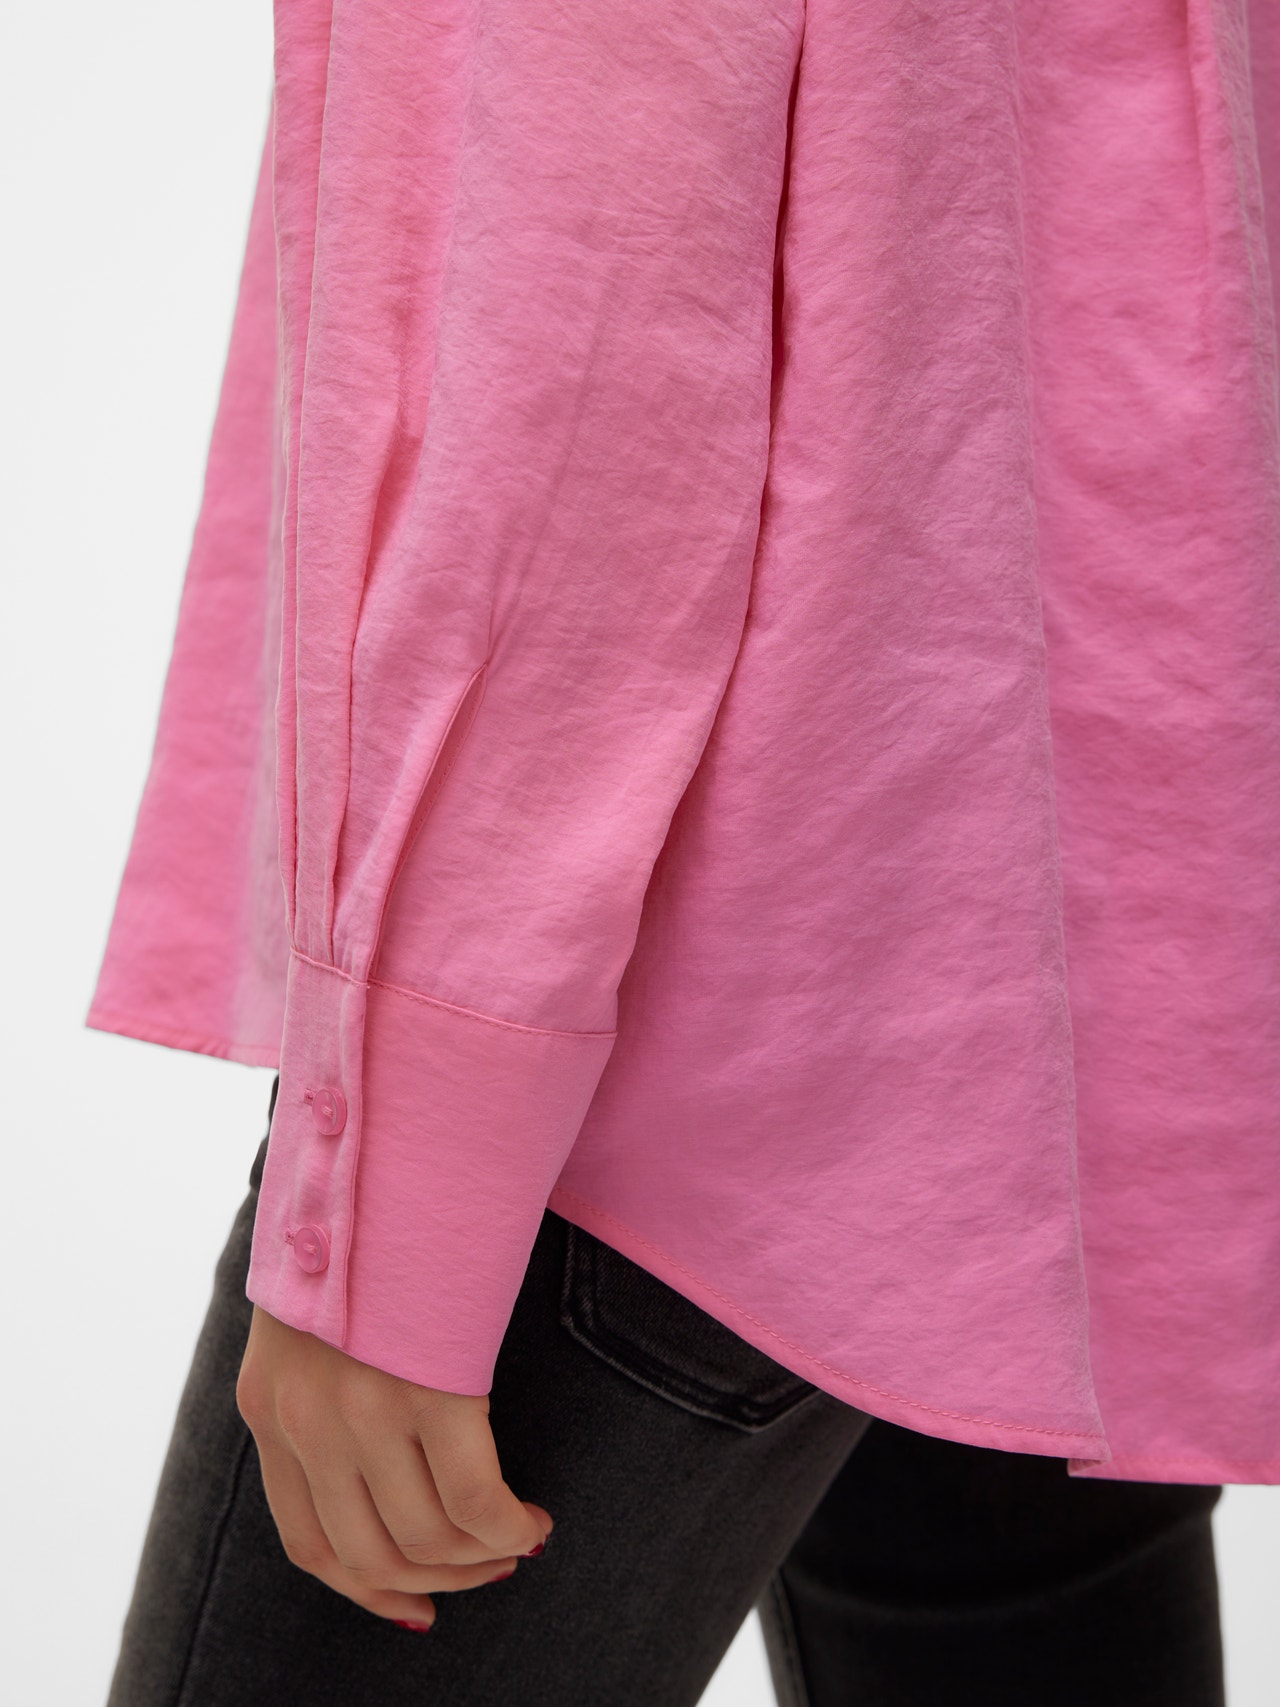 Vero Moda VMQUEENY Camisas -Pink Cosmos - 10289349